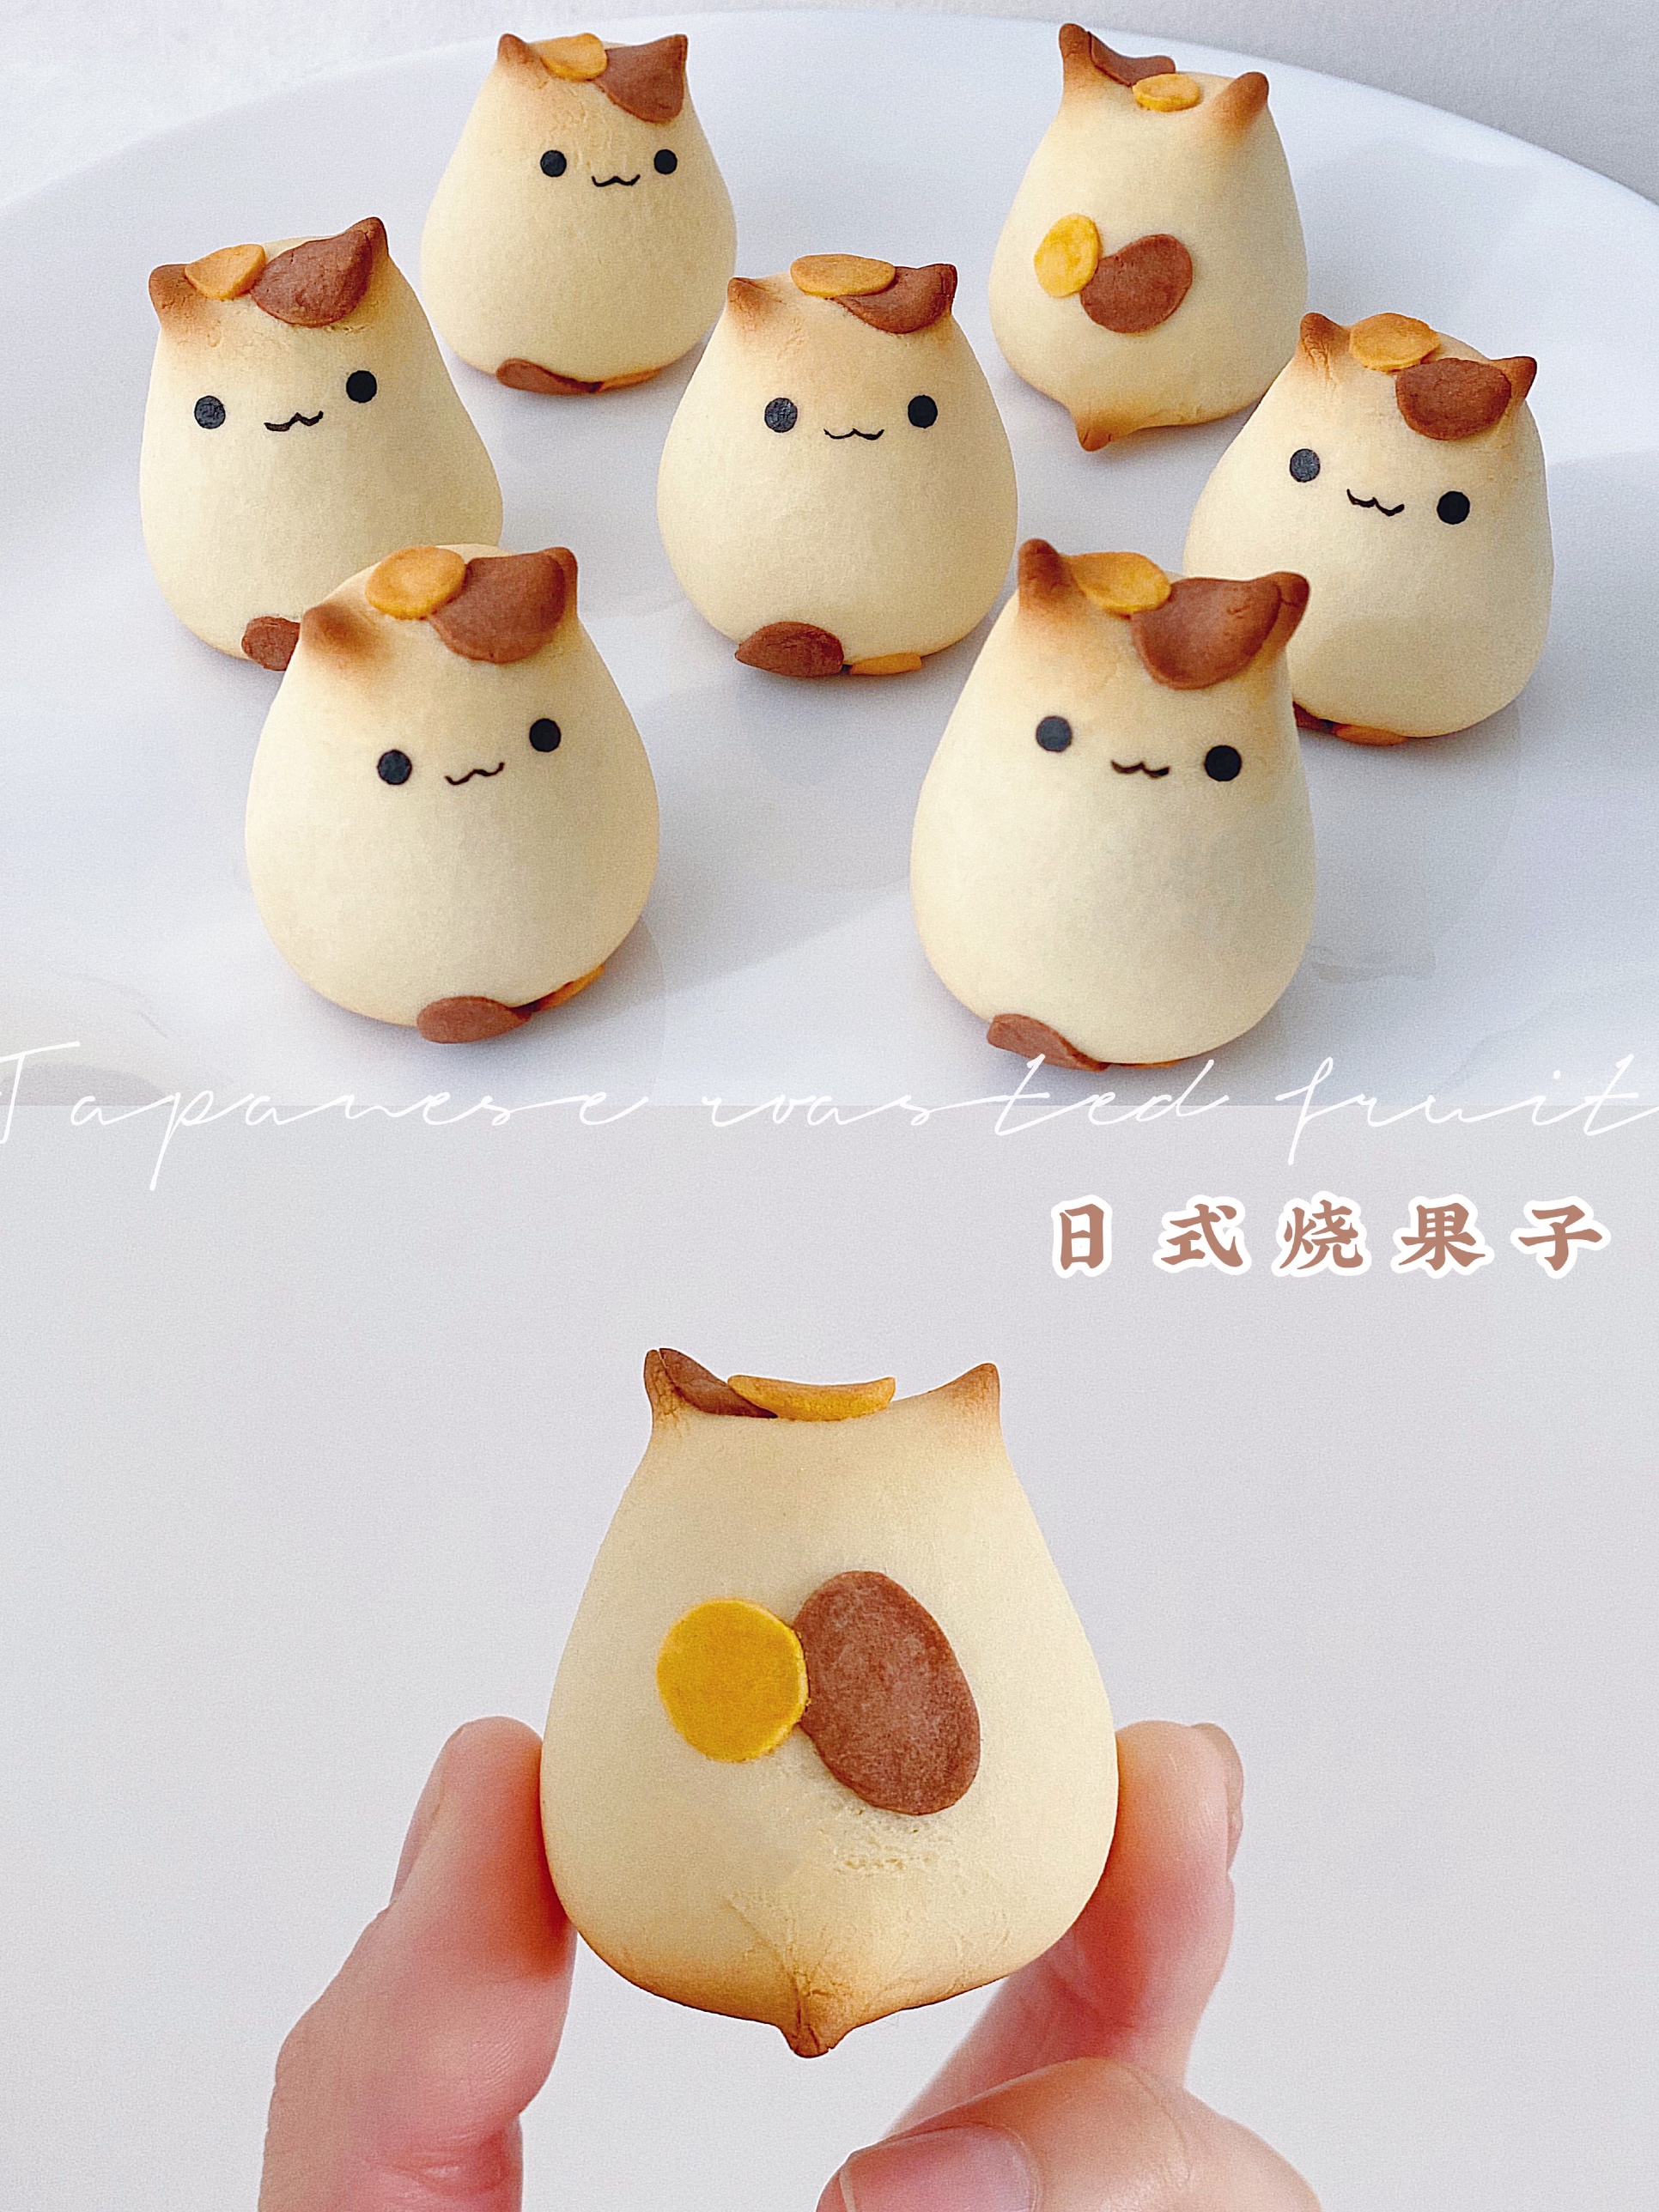 软萌可爱的日式猫咪烧果子 奶香浓郁 超简单的做法